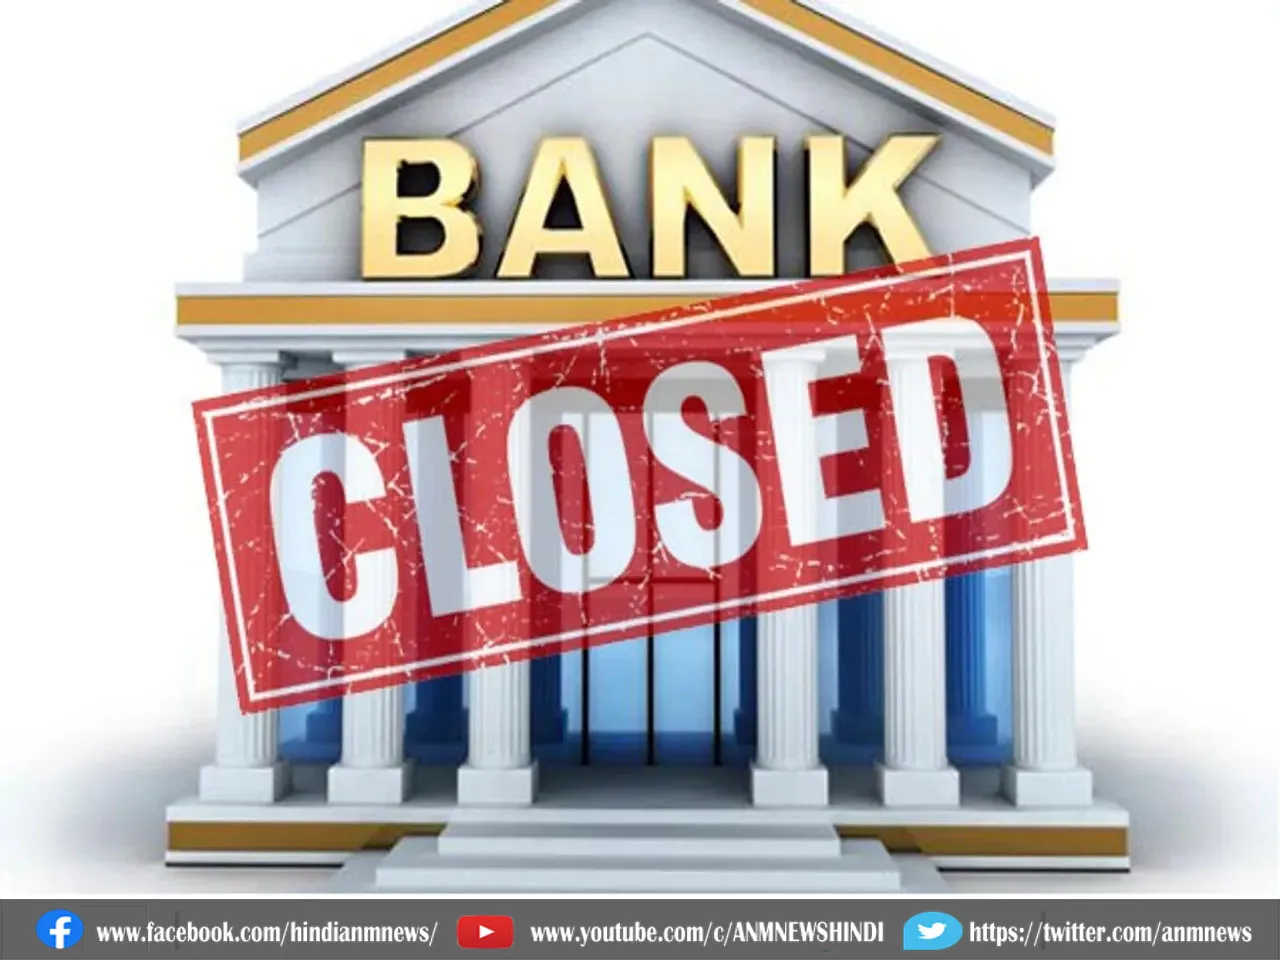  bank close